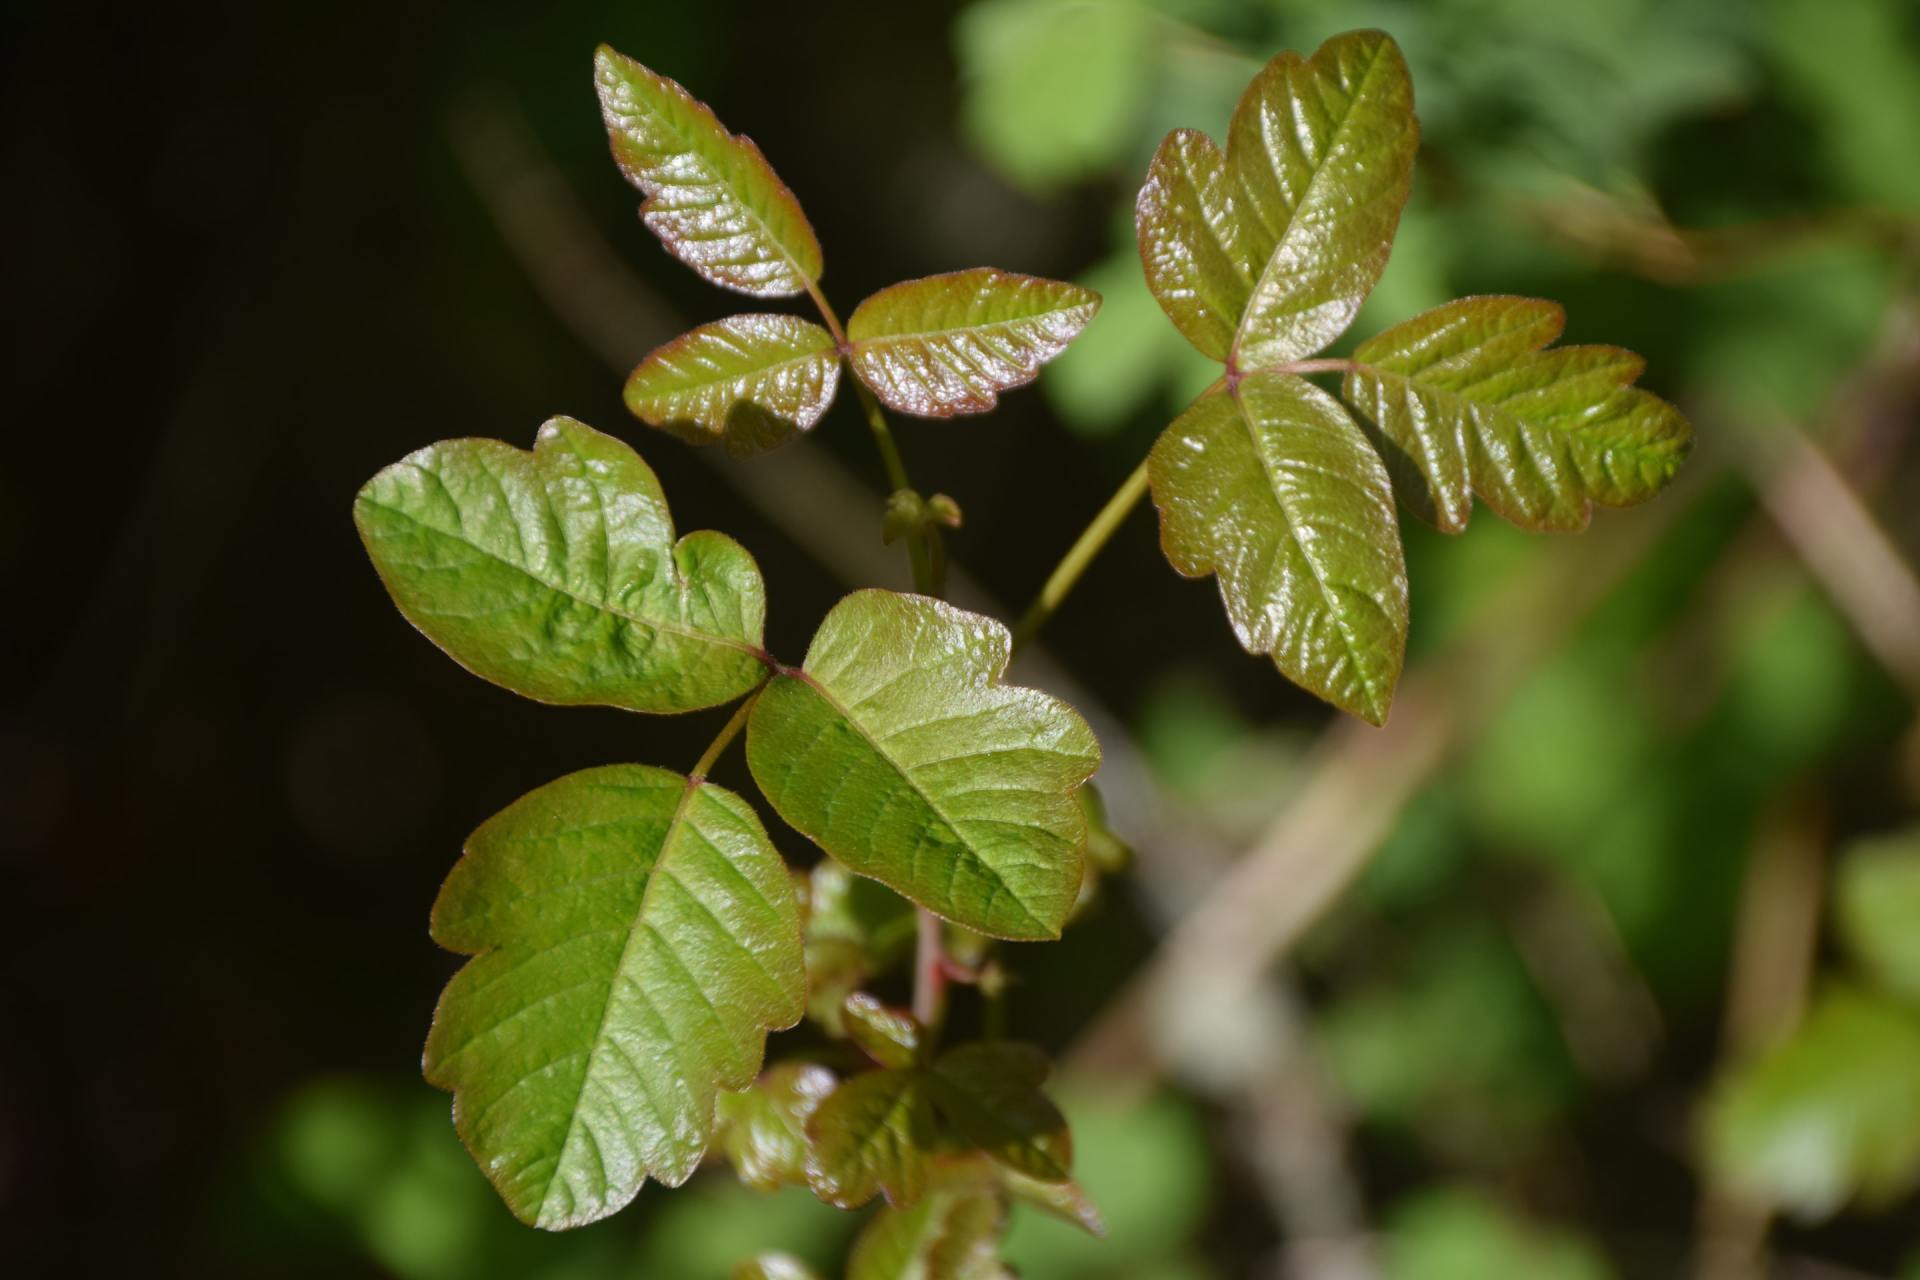 Poison Ivy FAQs for Summertime